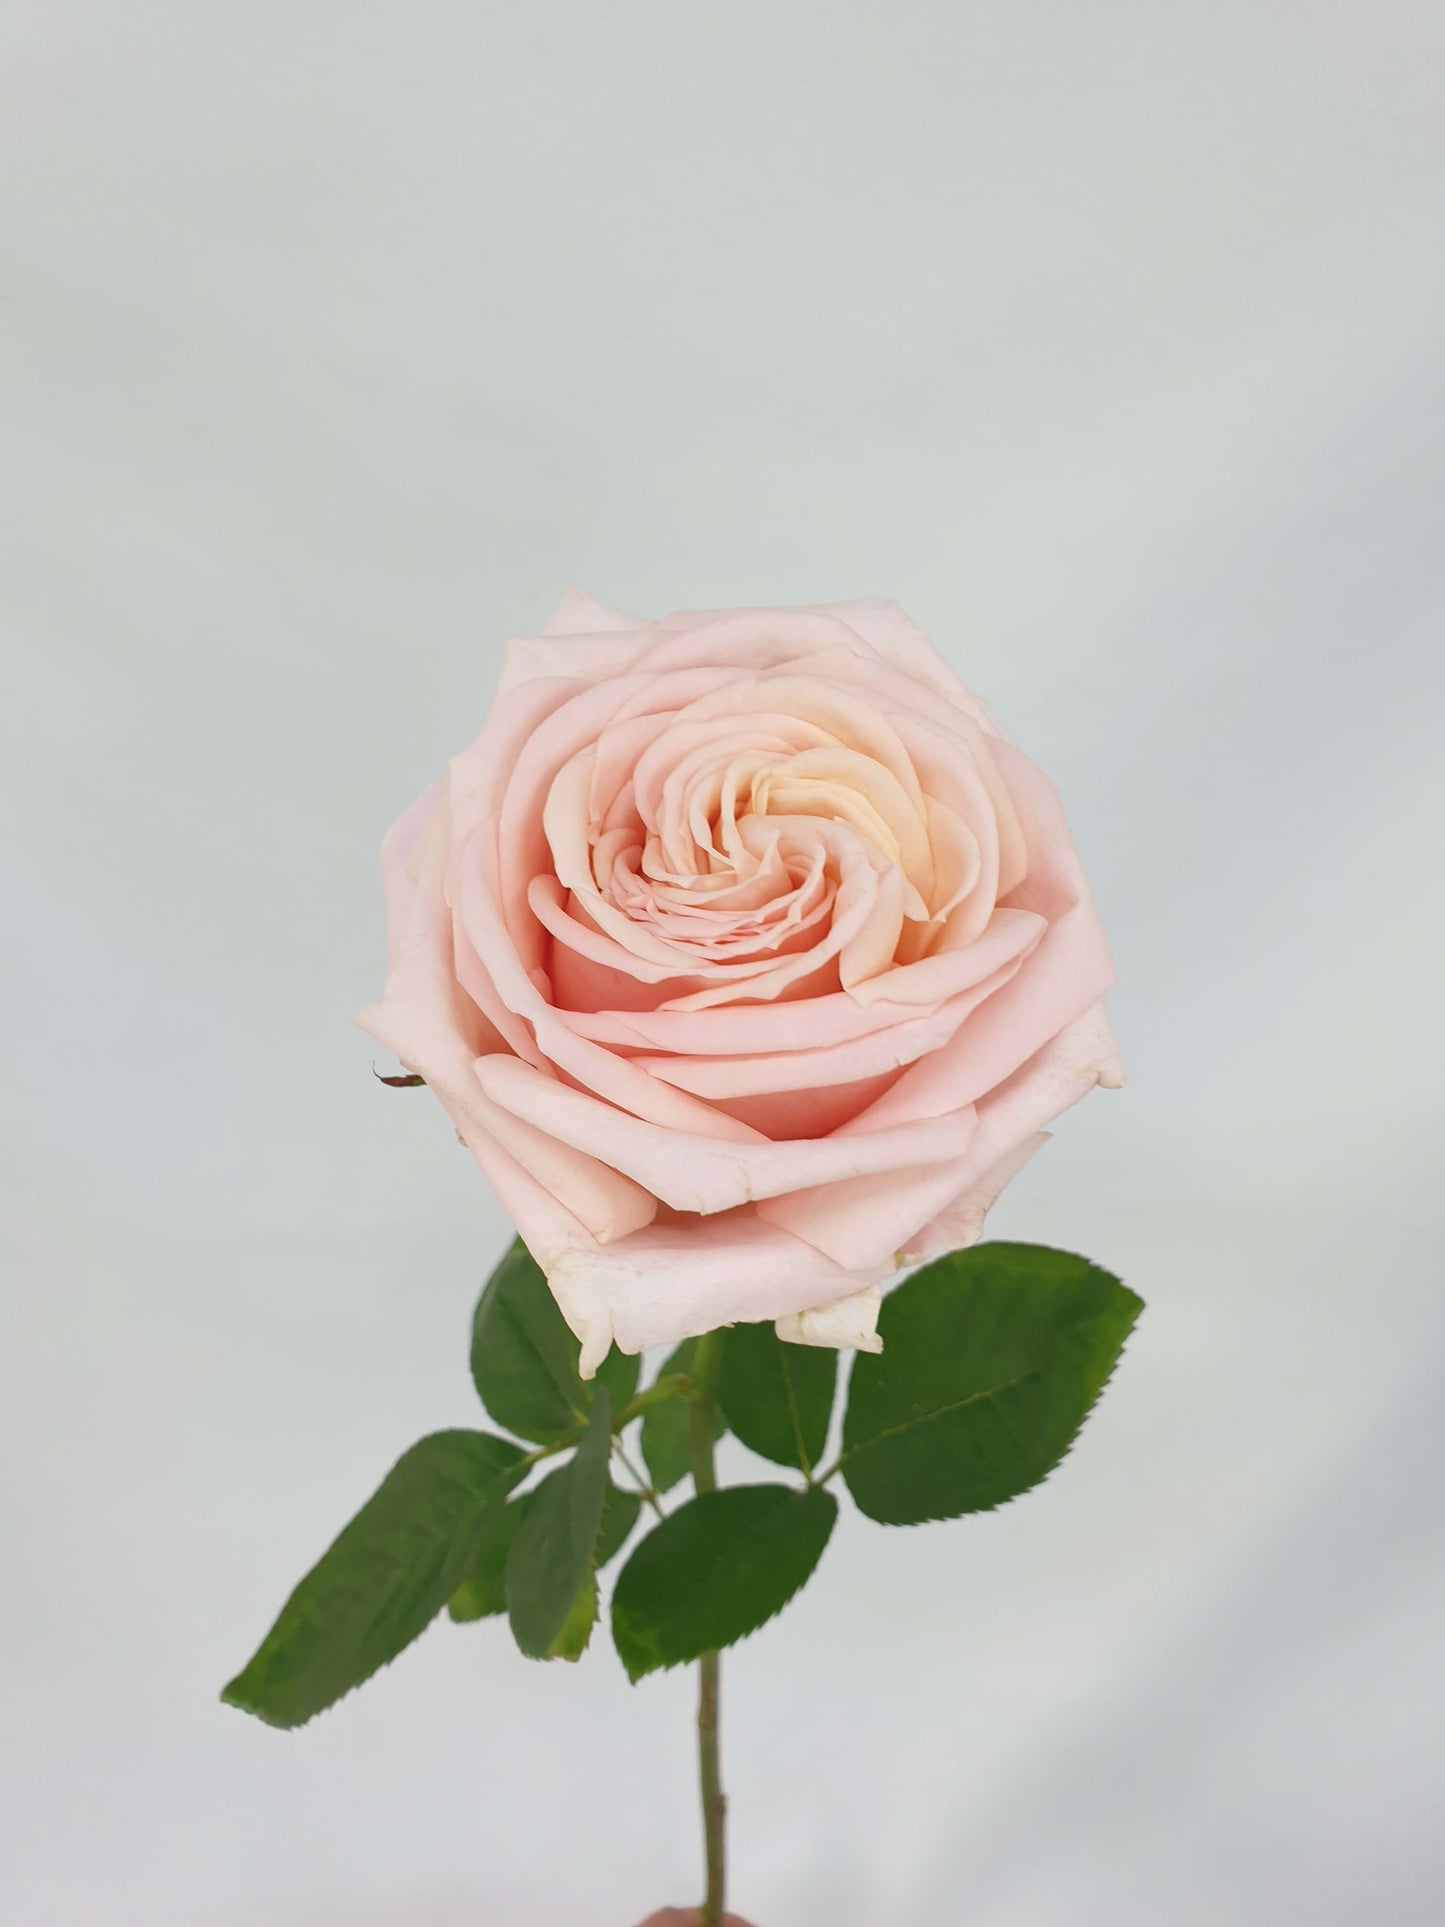 A very light pink rose flower